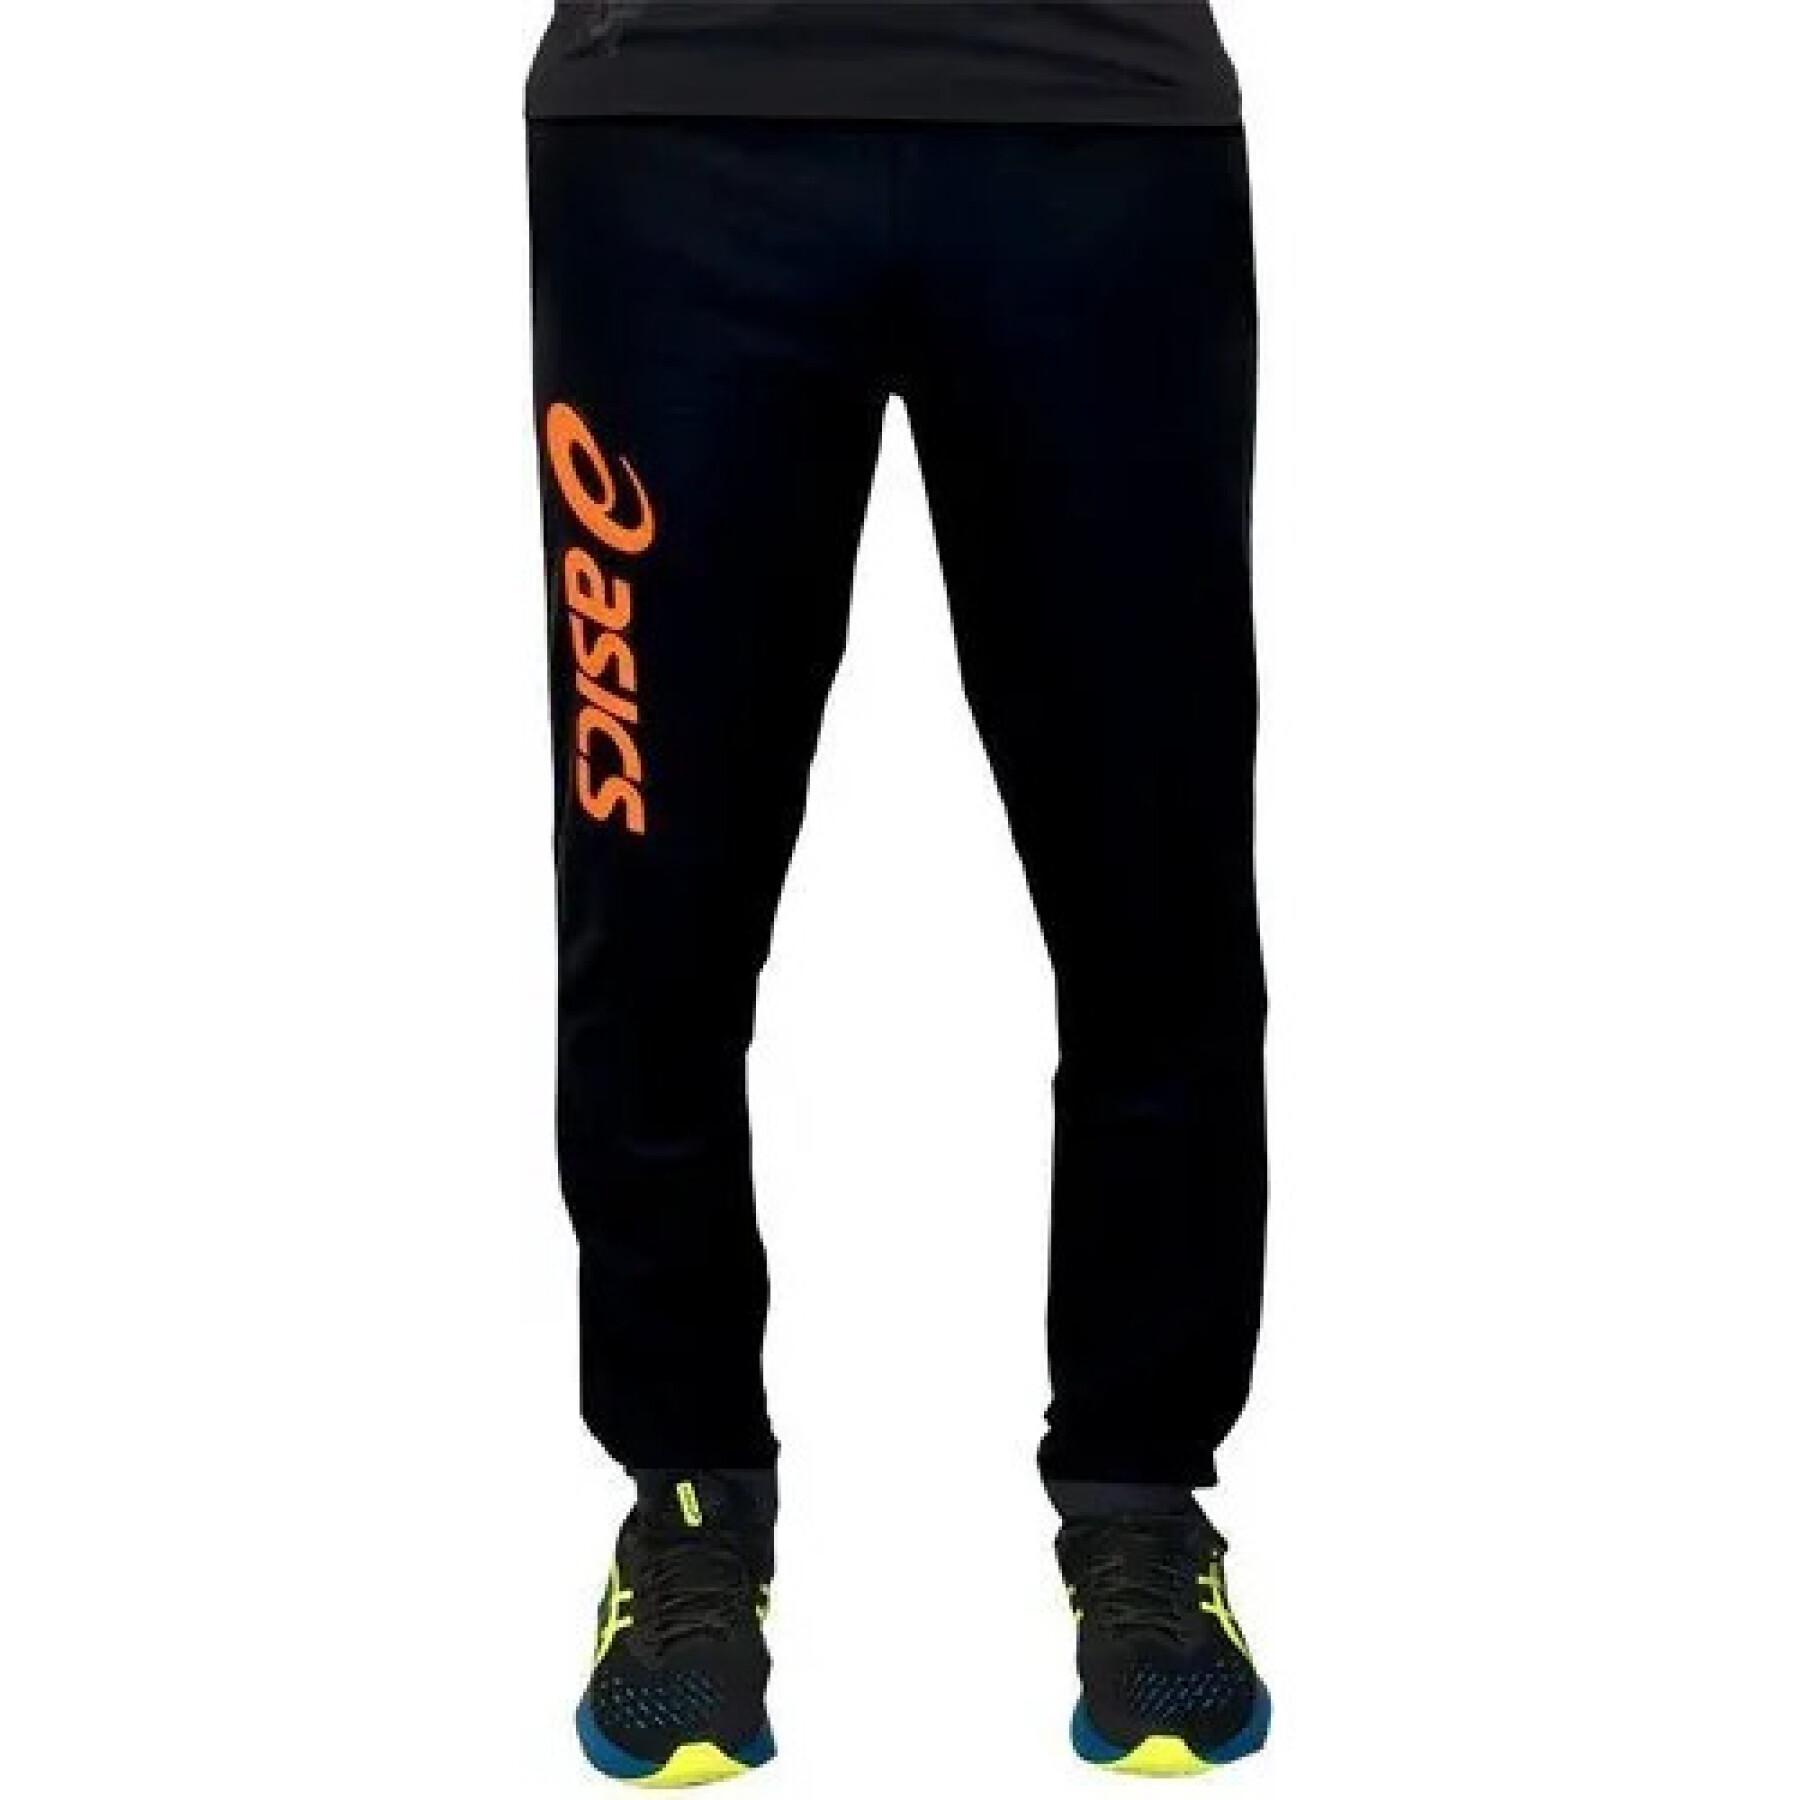 Presta atención a Ceder el paso Rancio Jogging Asics Sigma - Pantalones de entrenamiento - Teamwear